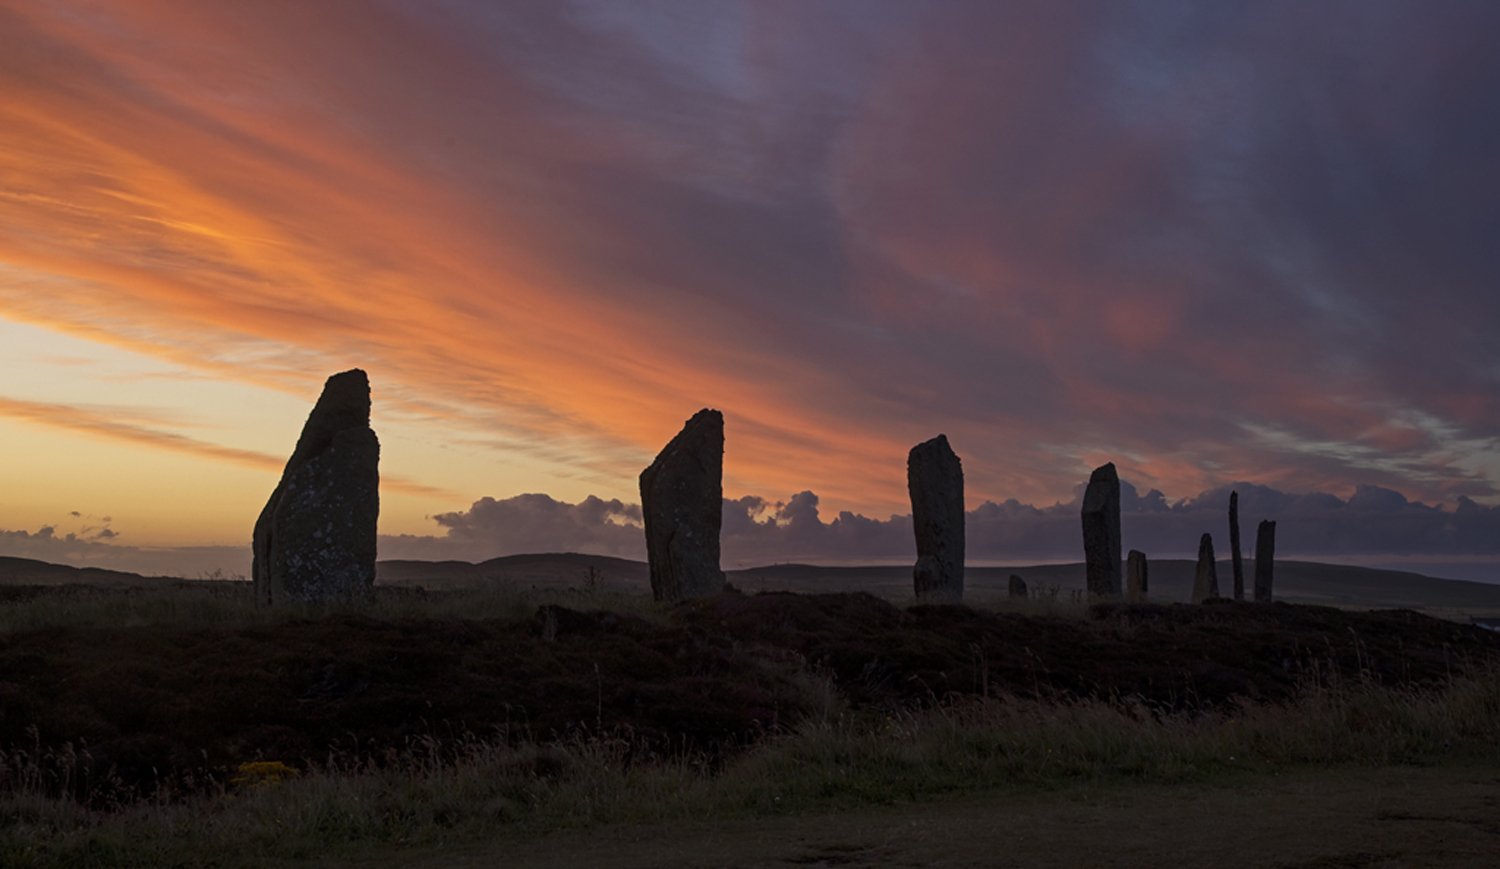 Sunrise, Ring of Brodgar, Orkney Islands, Scotland